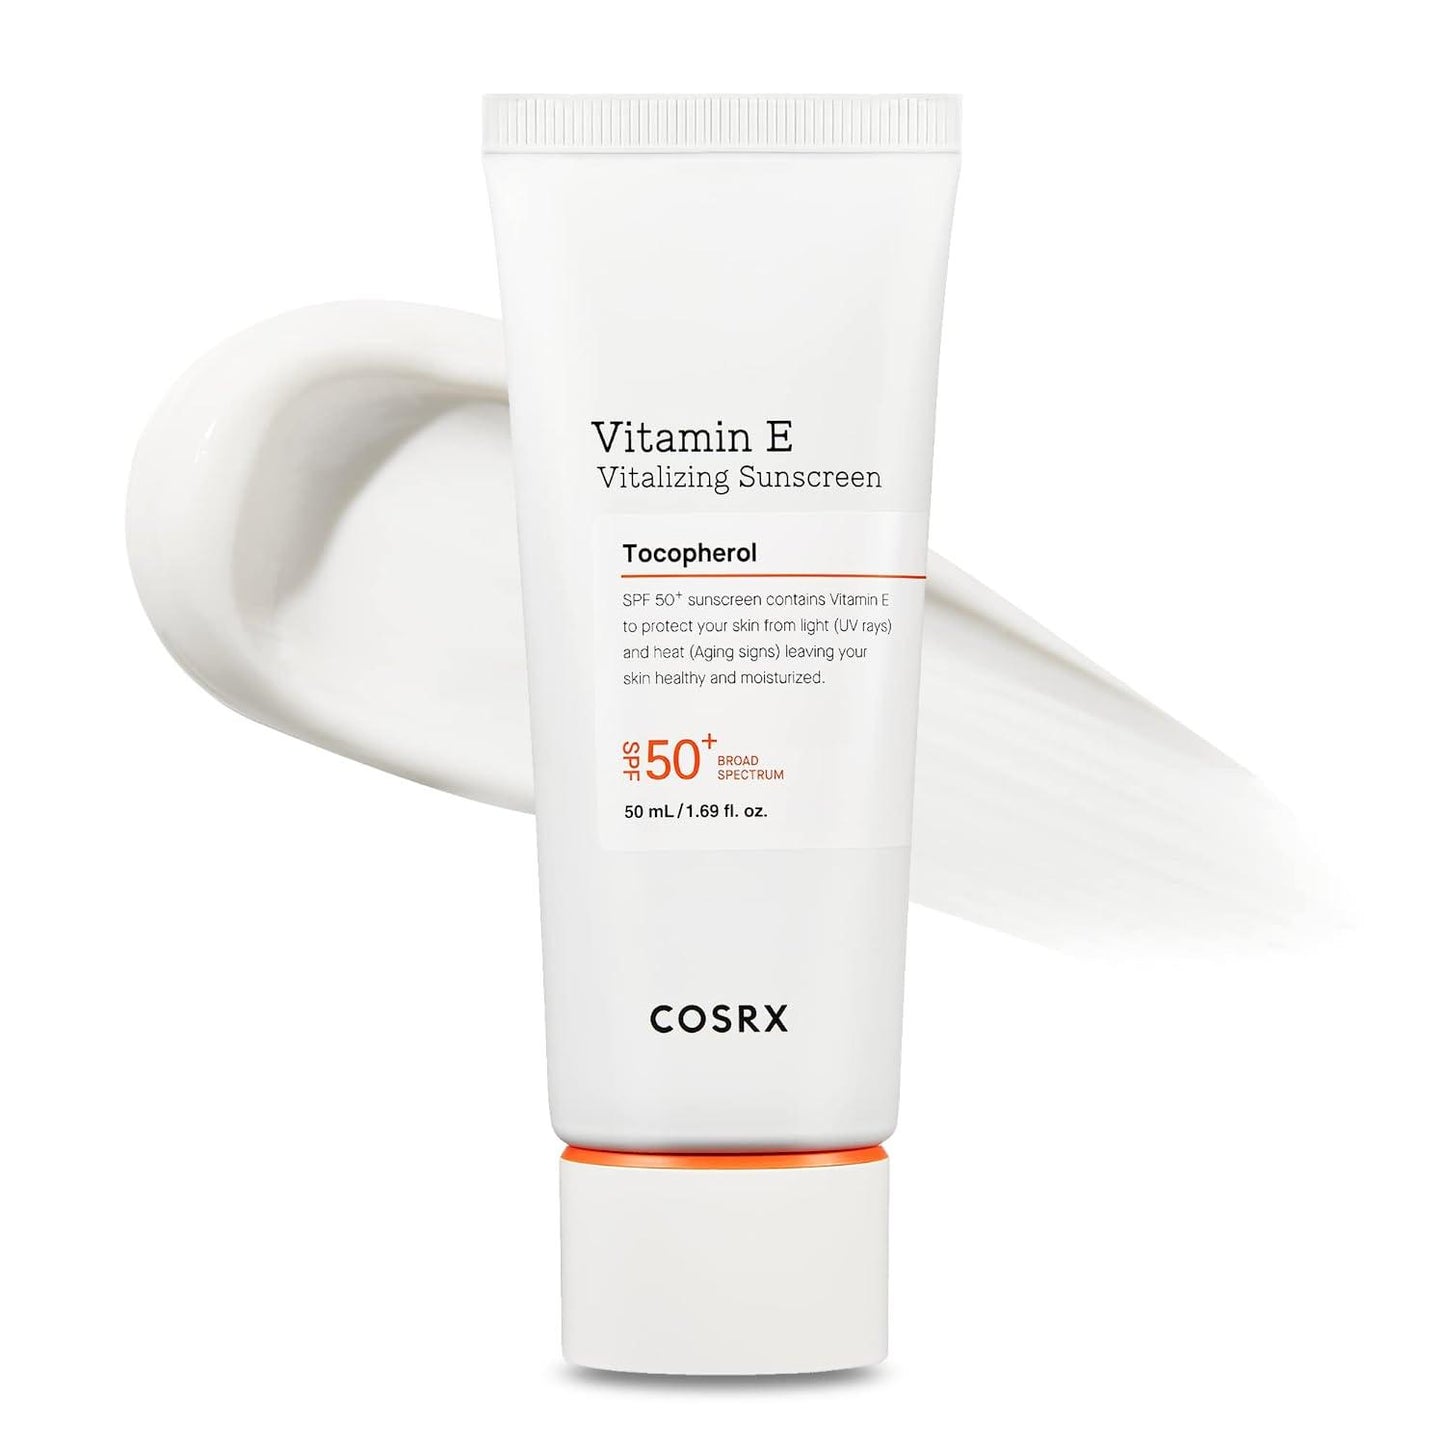 Cosrx | Vitamin E Vitalizing Sunscreen 50ml